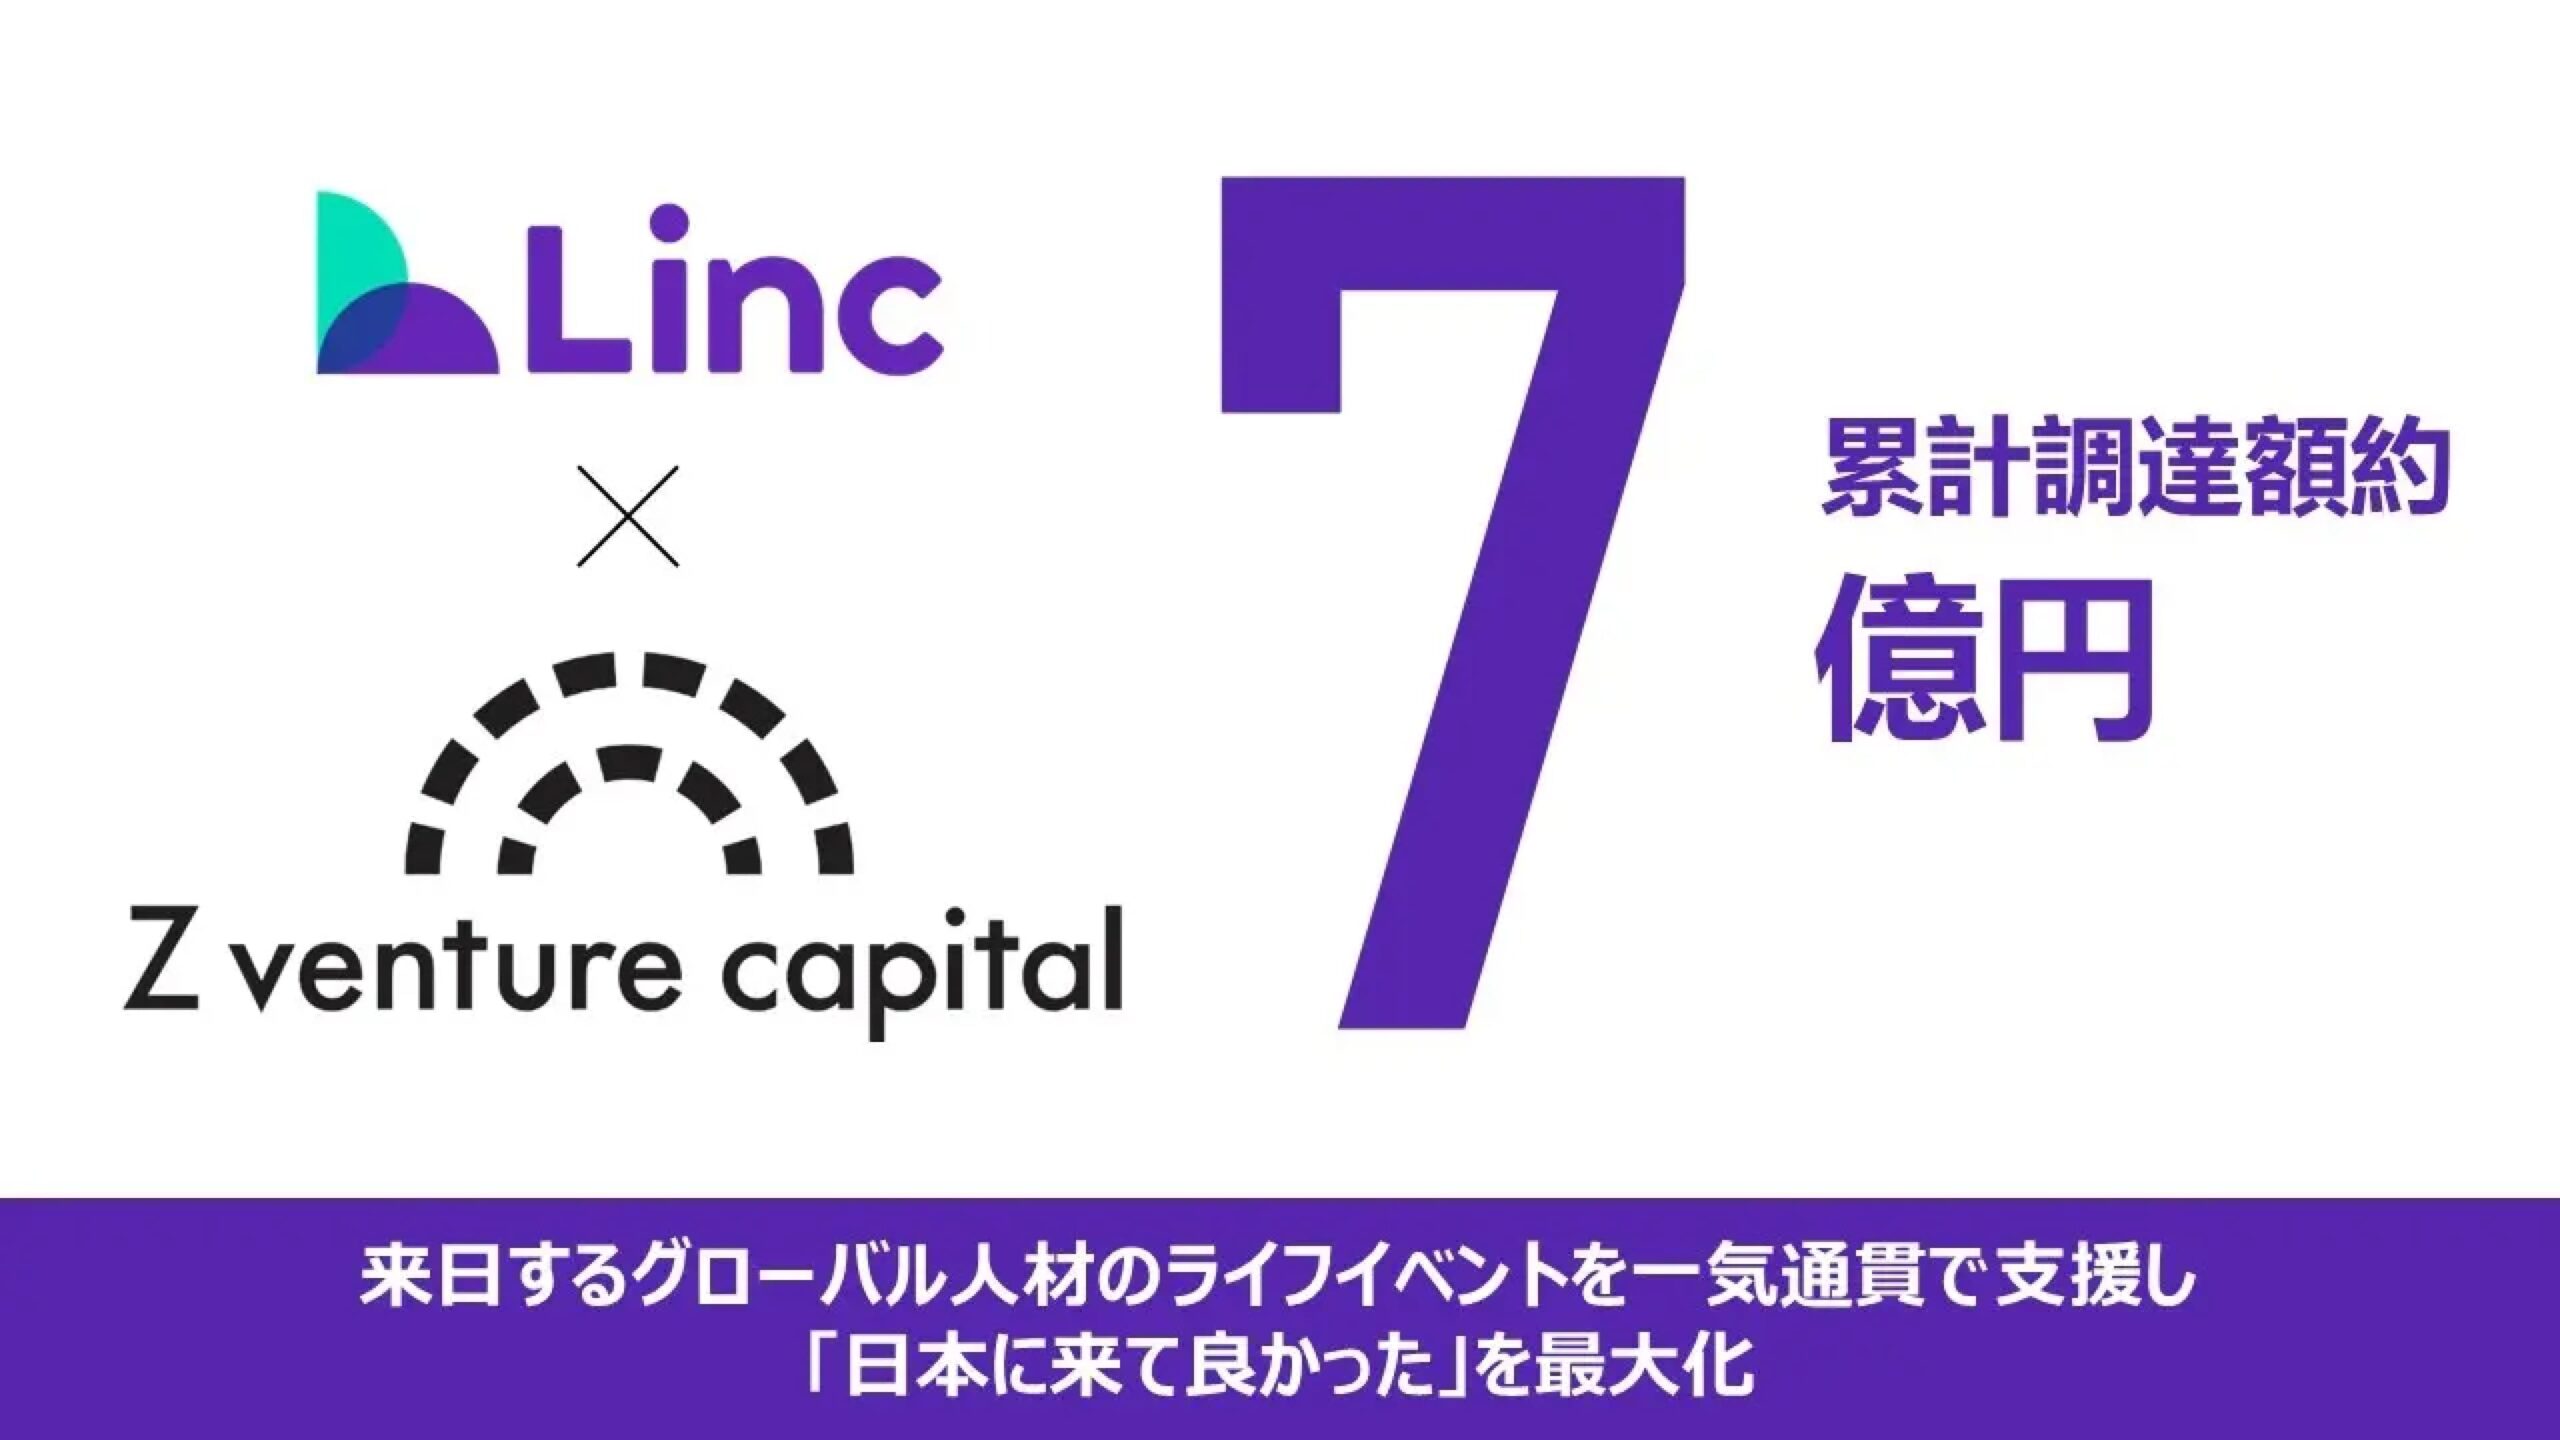 日本最大級のグローバル人材支援サービスを展開する株式会社Linc、累計調達額約7億円の資金調達を達成